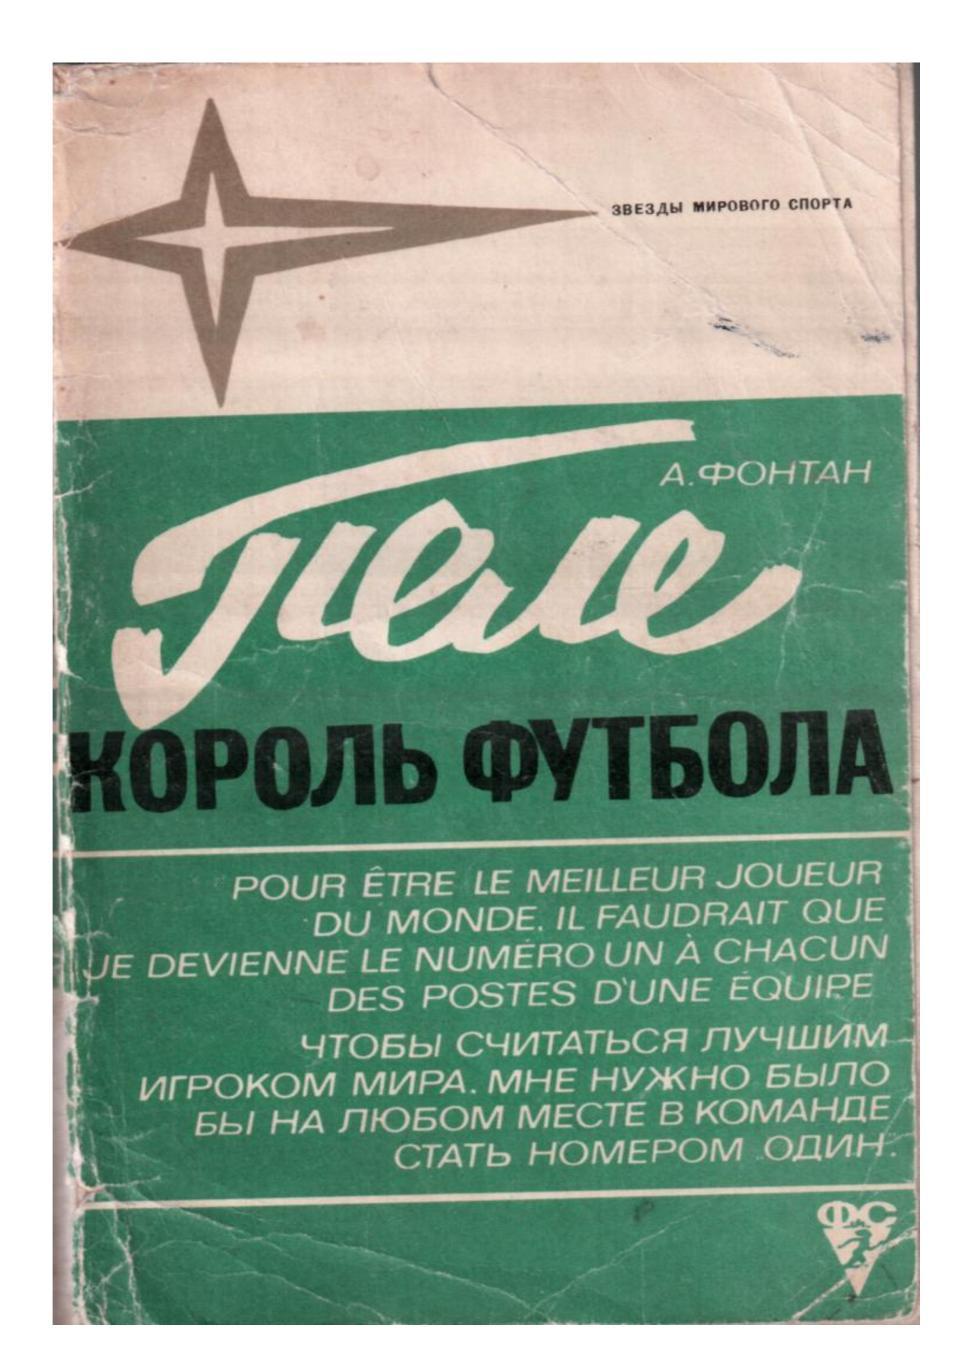 Звёзды мирового футбола. А. Фонтан. Пеле – король футбола. Москва 1973.